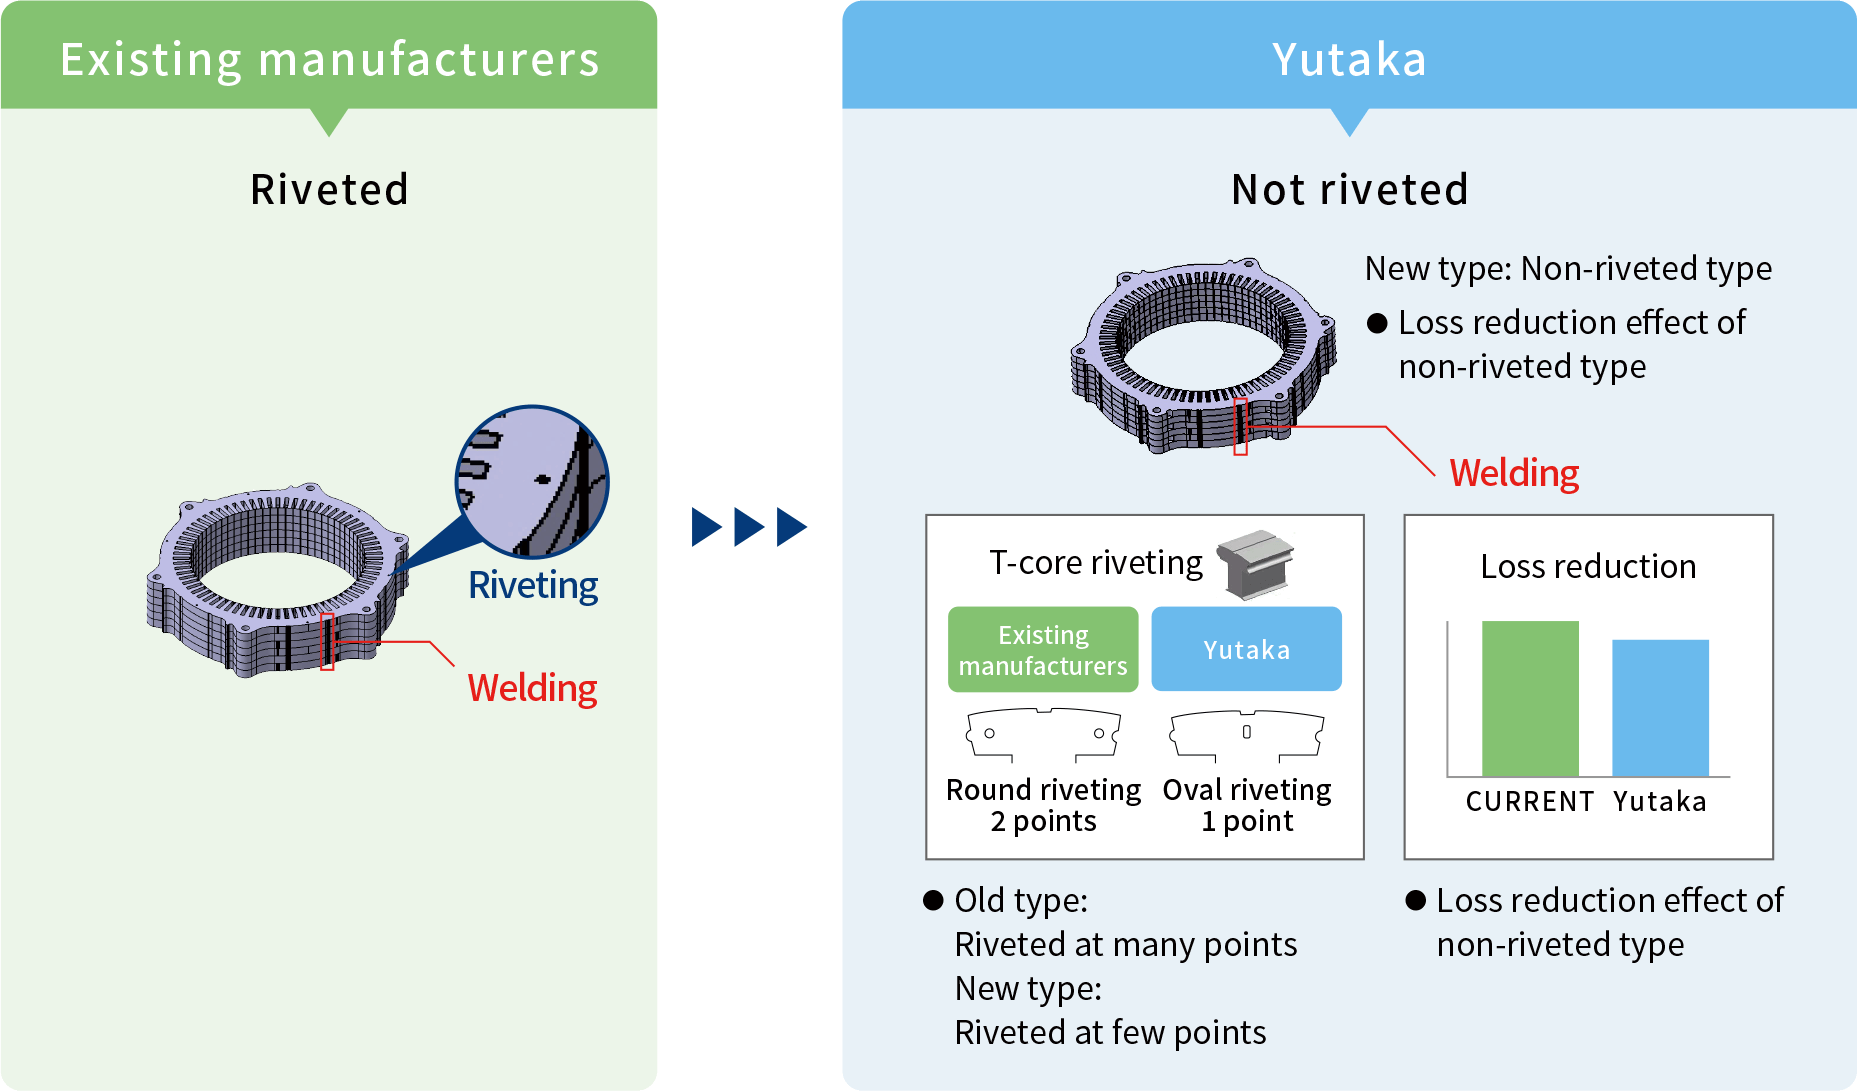 Yutaka's strengths